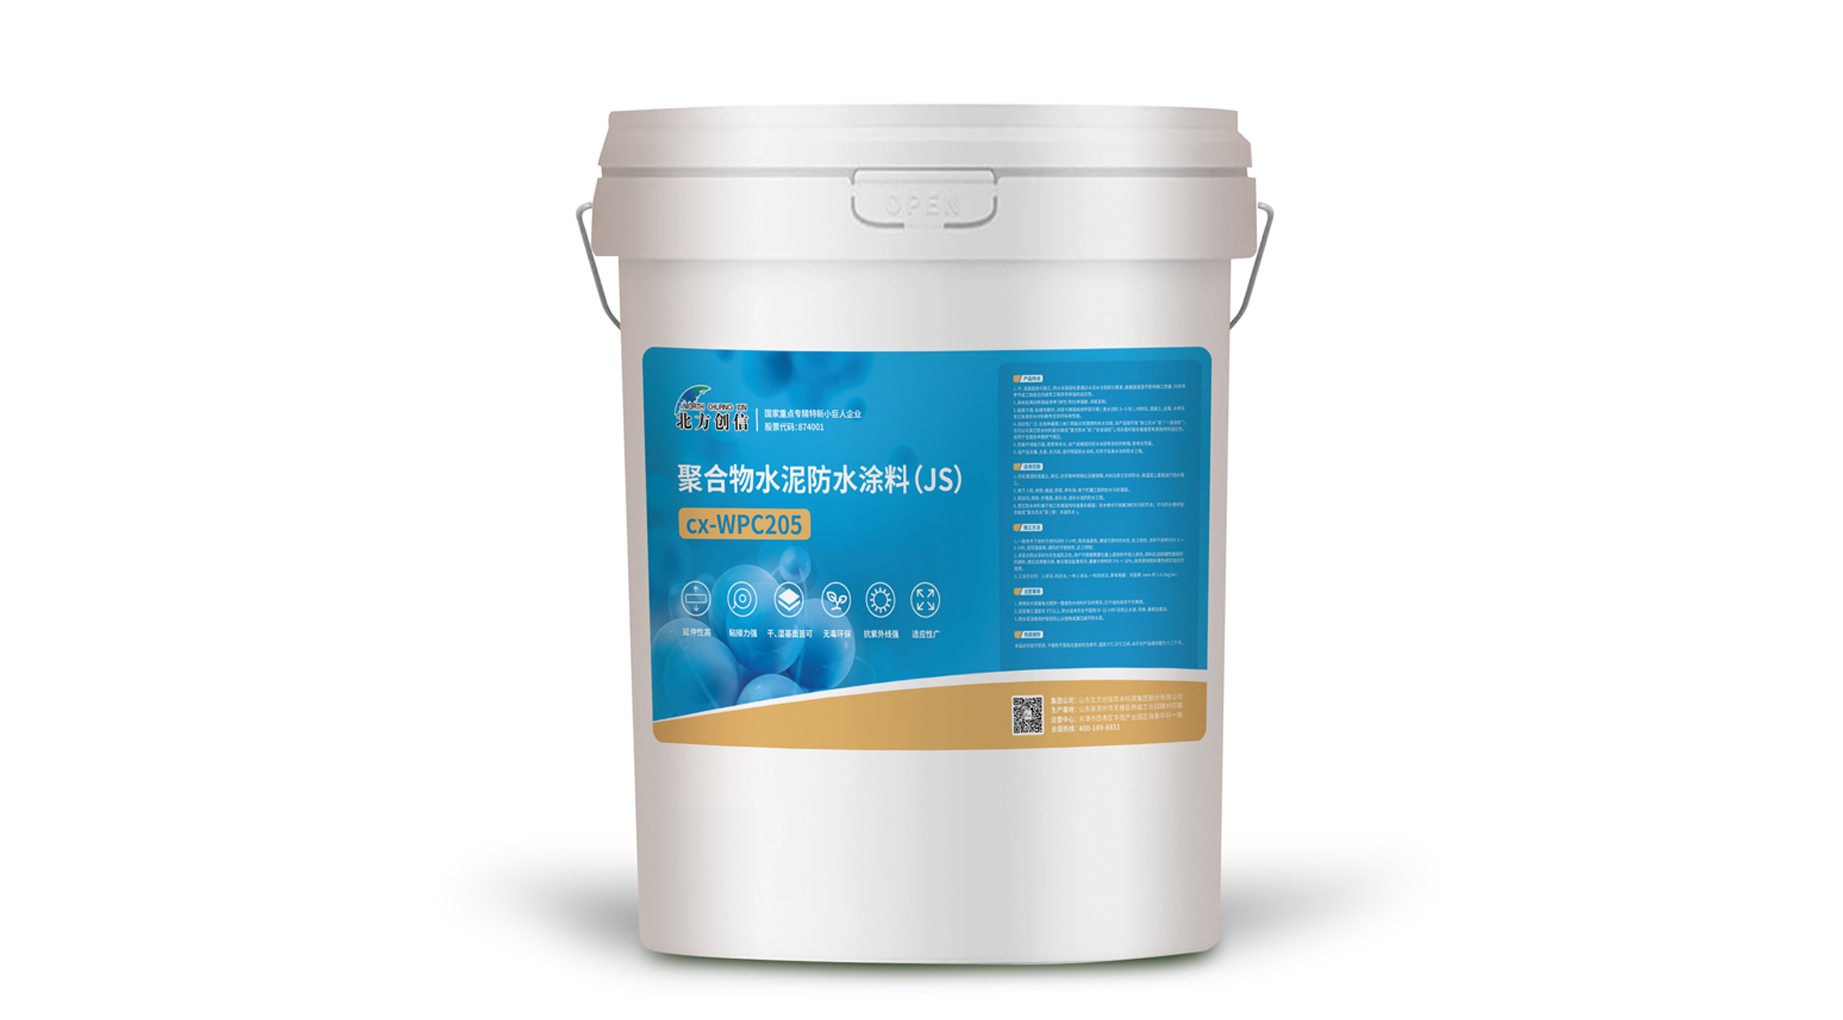 cx-WPC205 聚合物水泥防水涂料（JS）